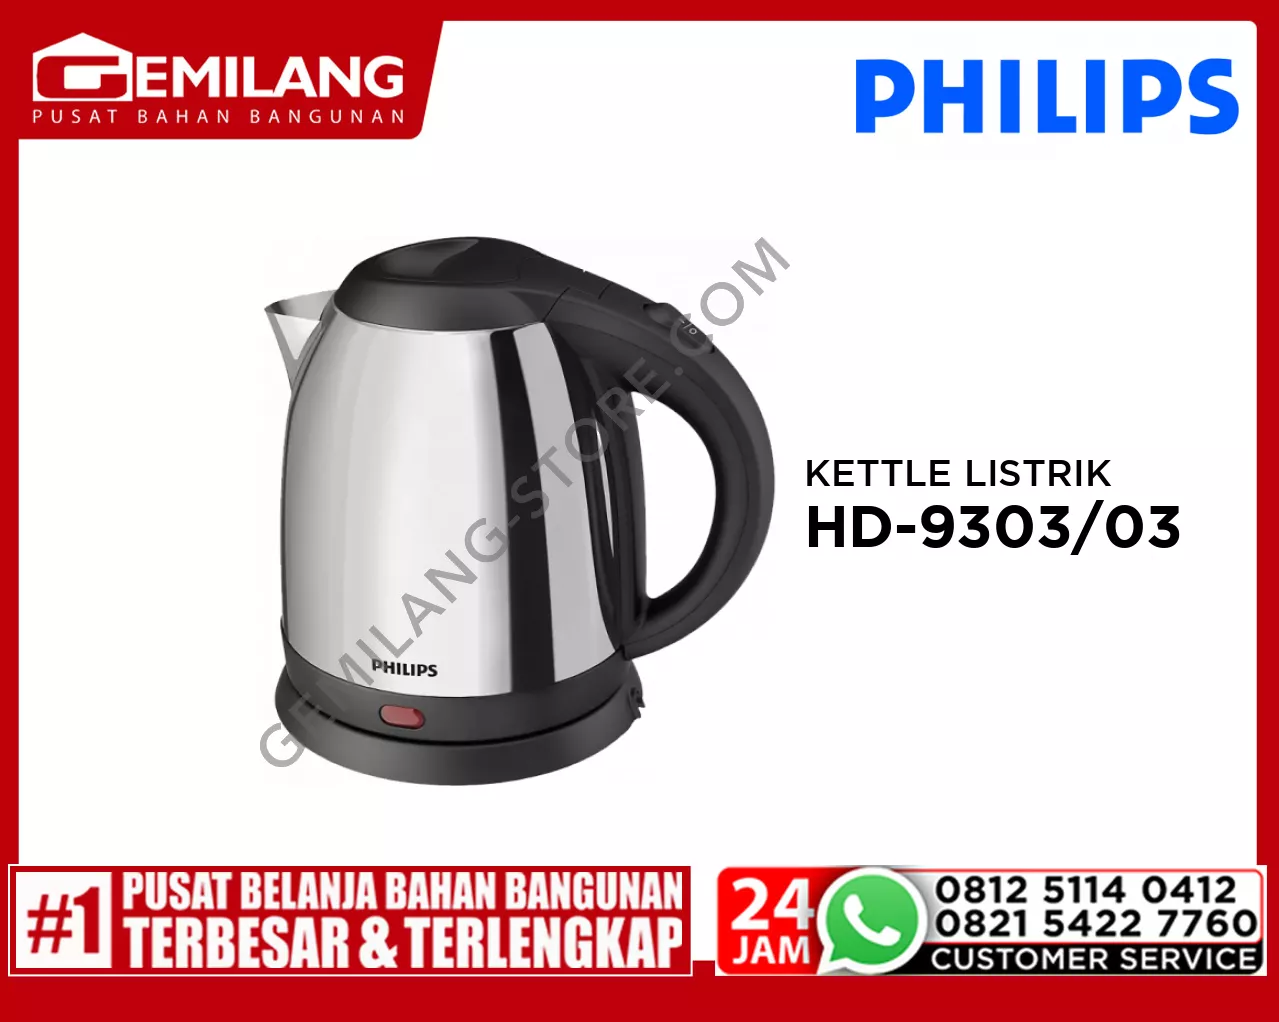 PHILIPS KETTLE LISTRIK HD-9303/03